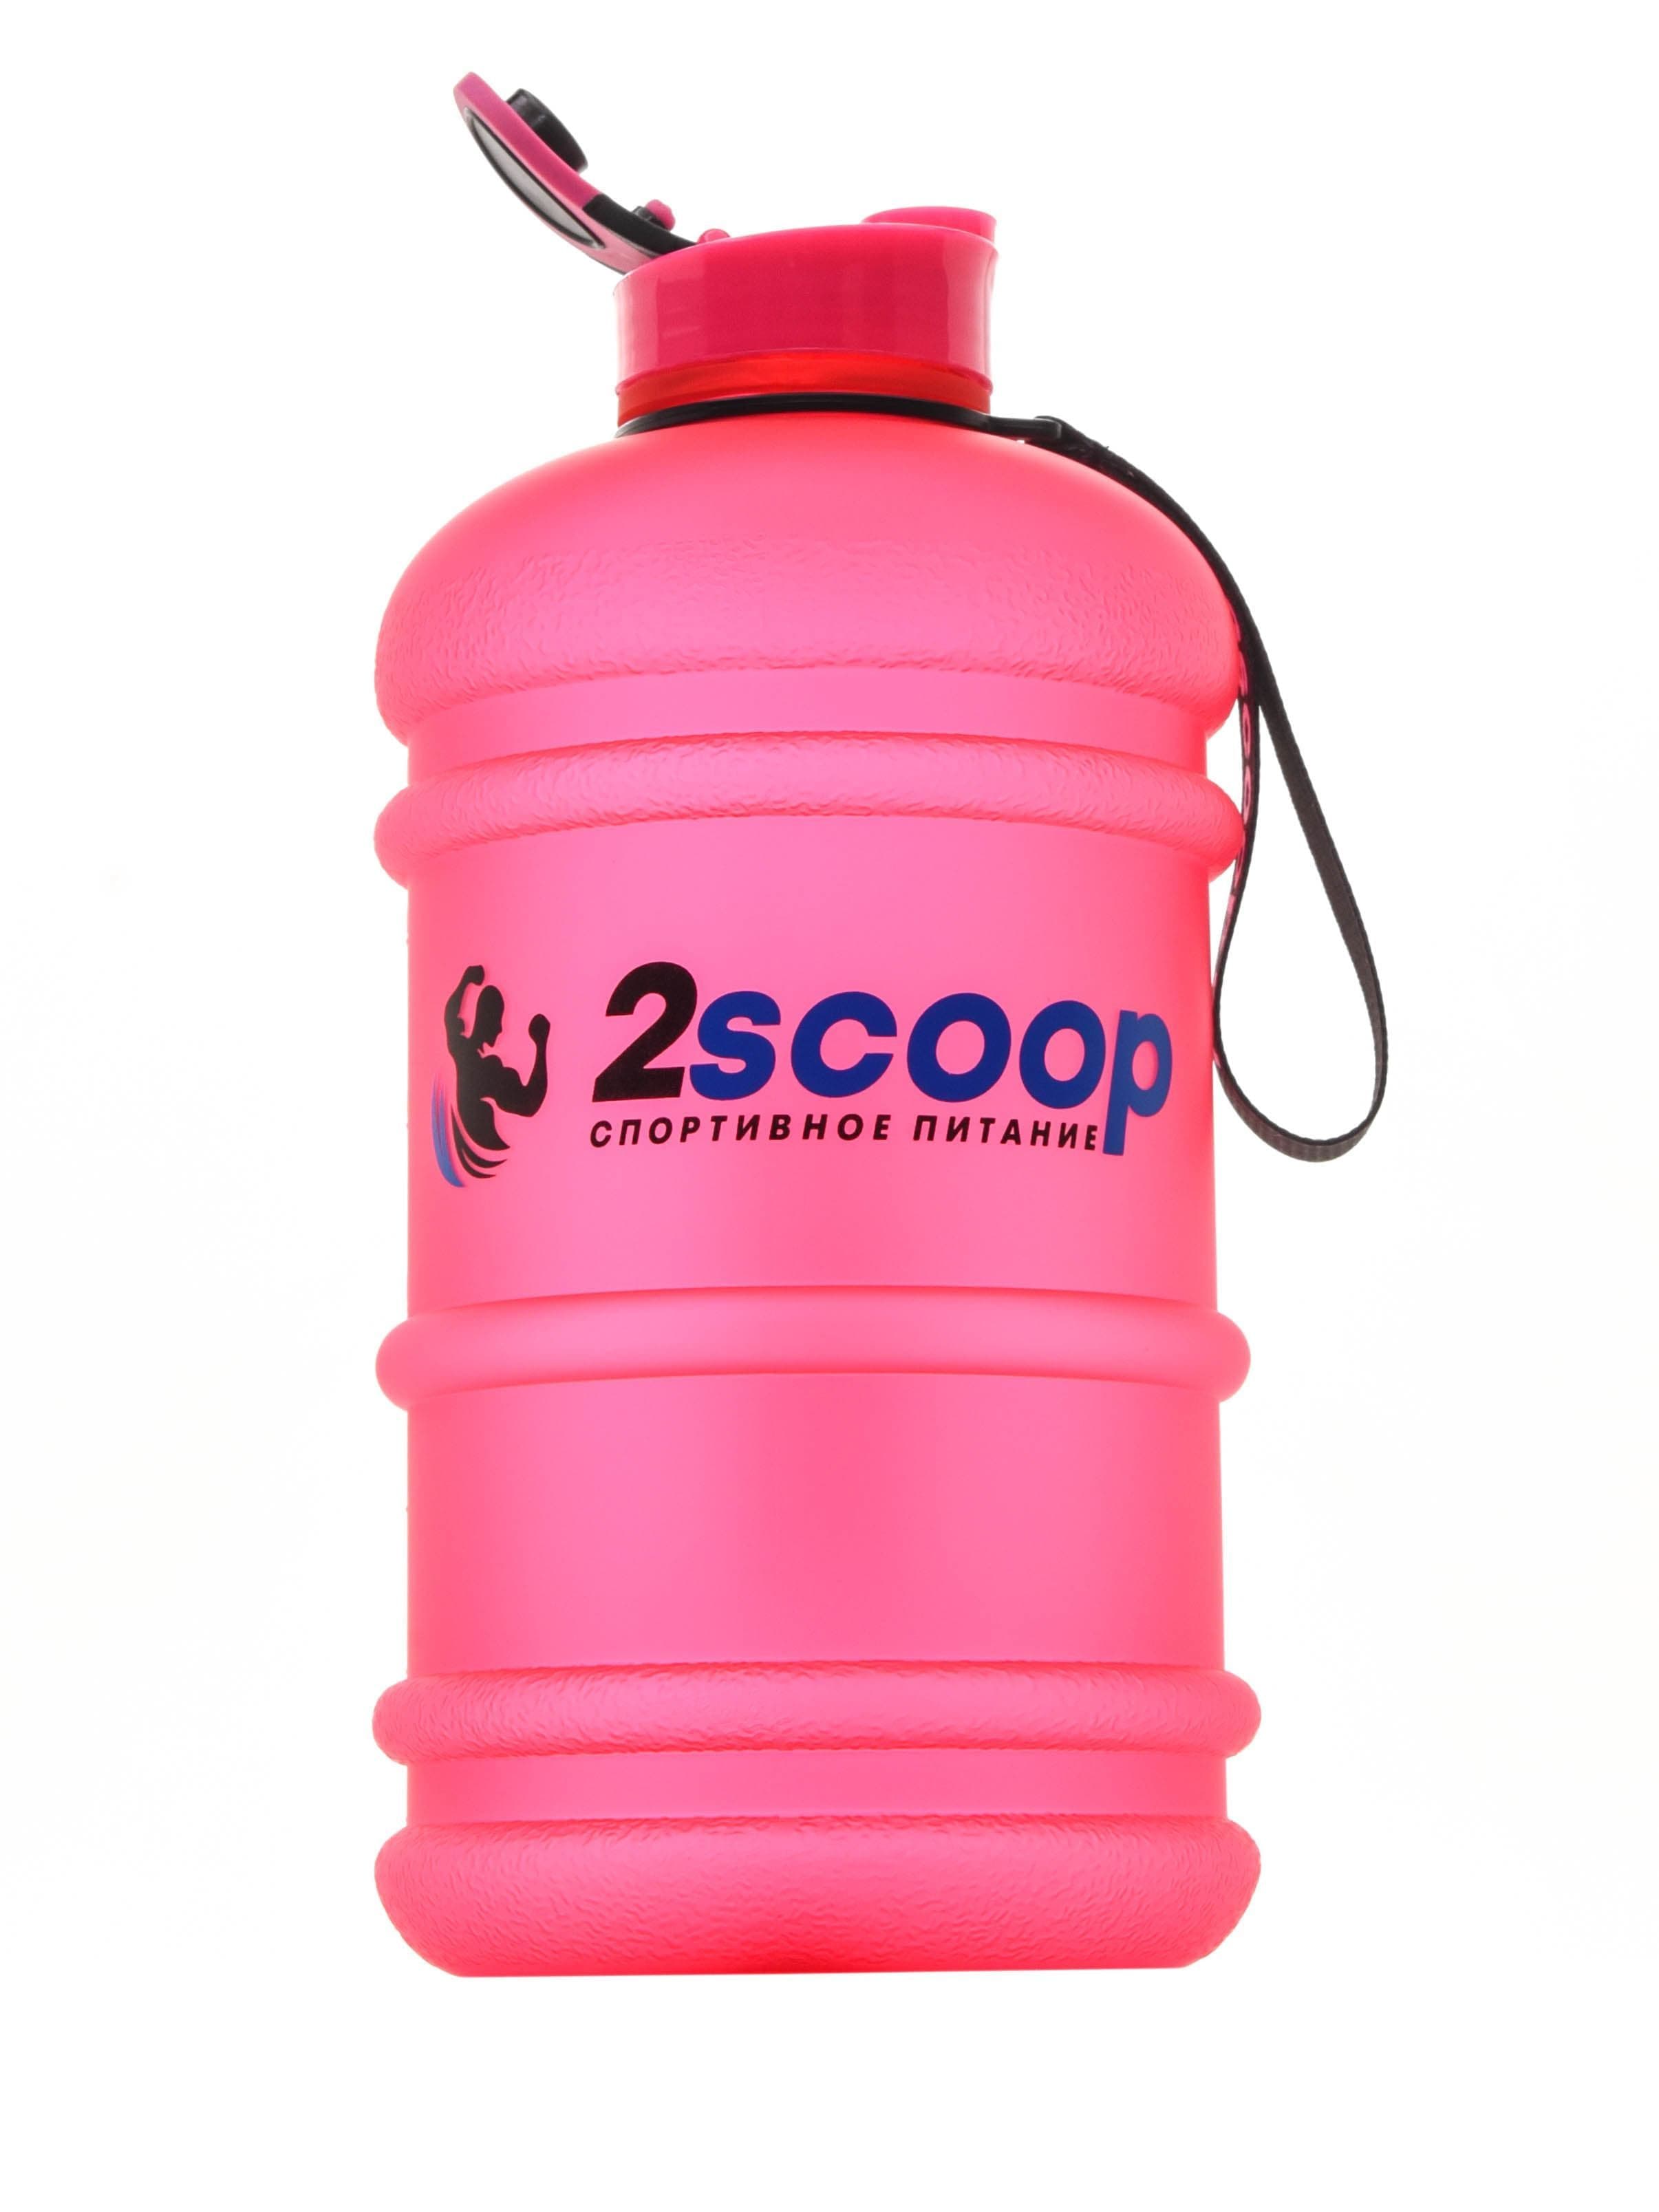 2scoop Бутыль 2.2 L прорезиненный крышка щелчок (Розовый) фото